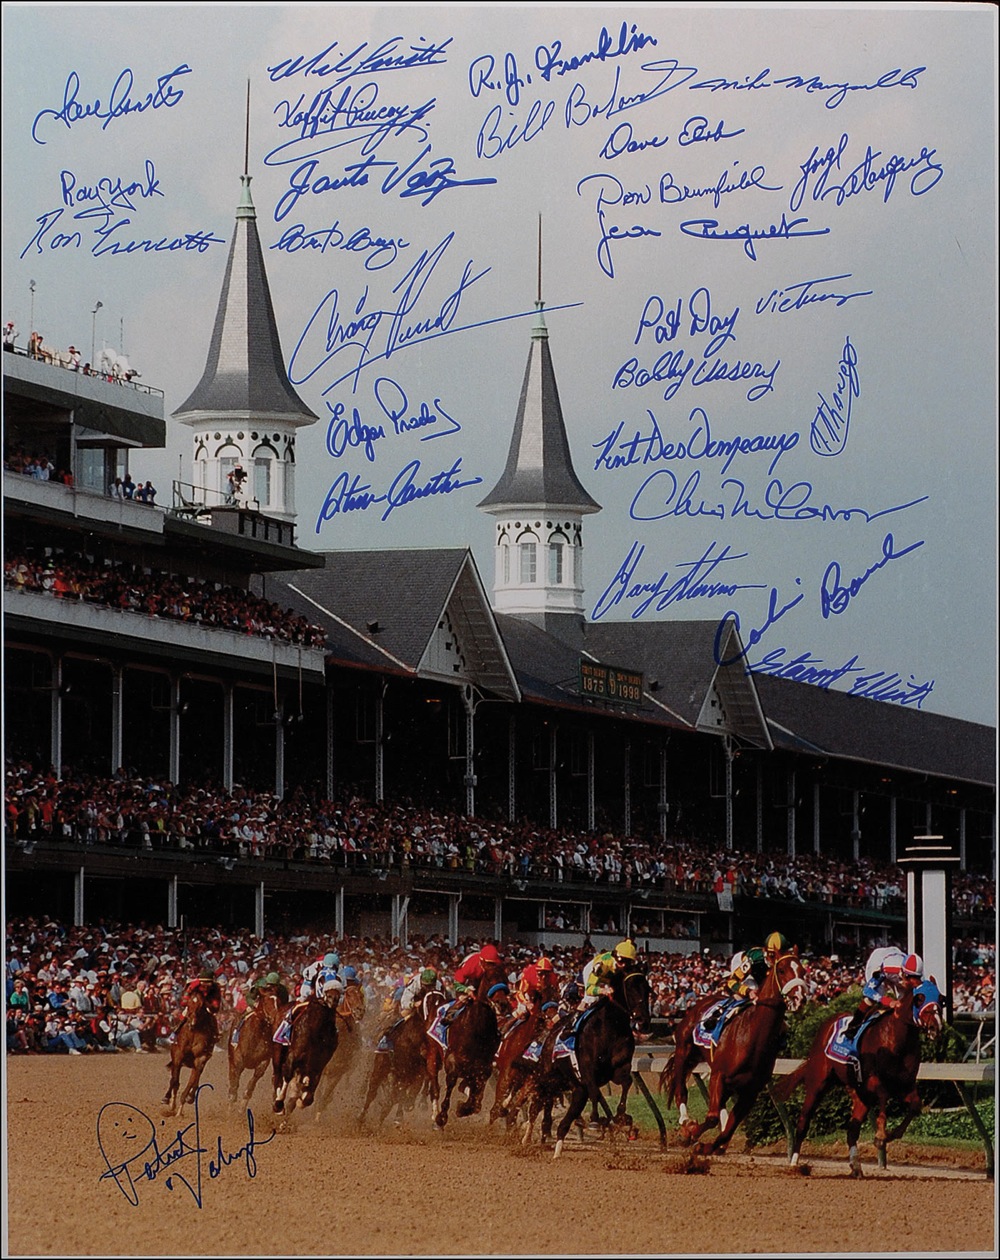 Lot #1446 Horse Racing: Kentucky Derby